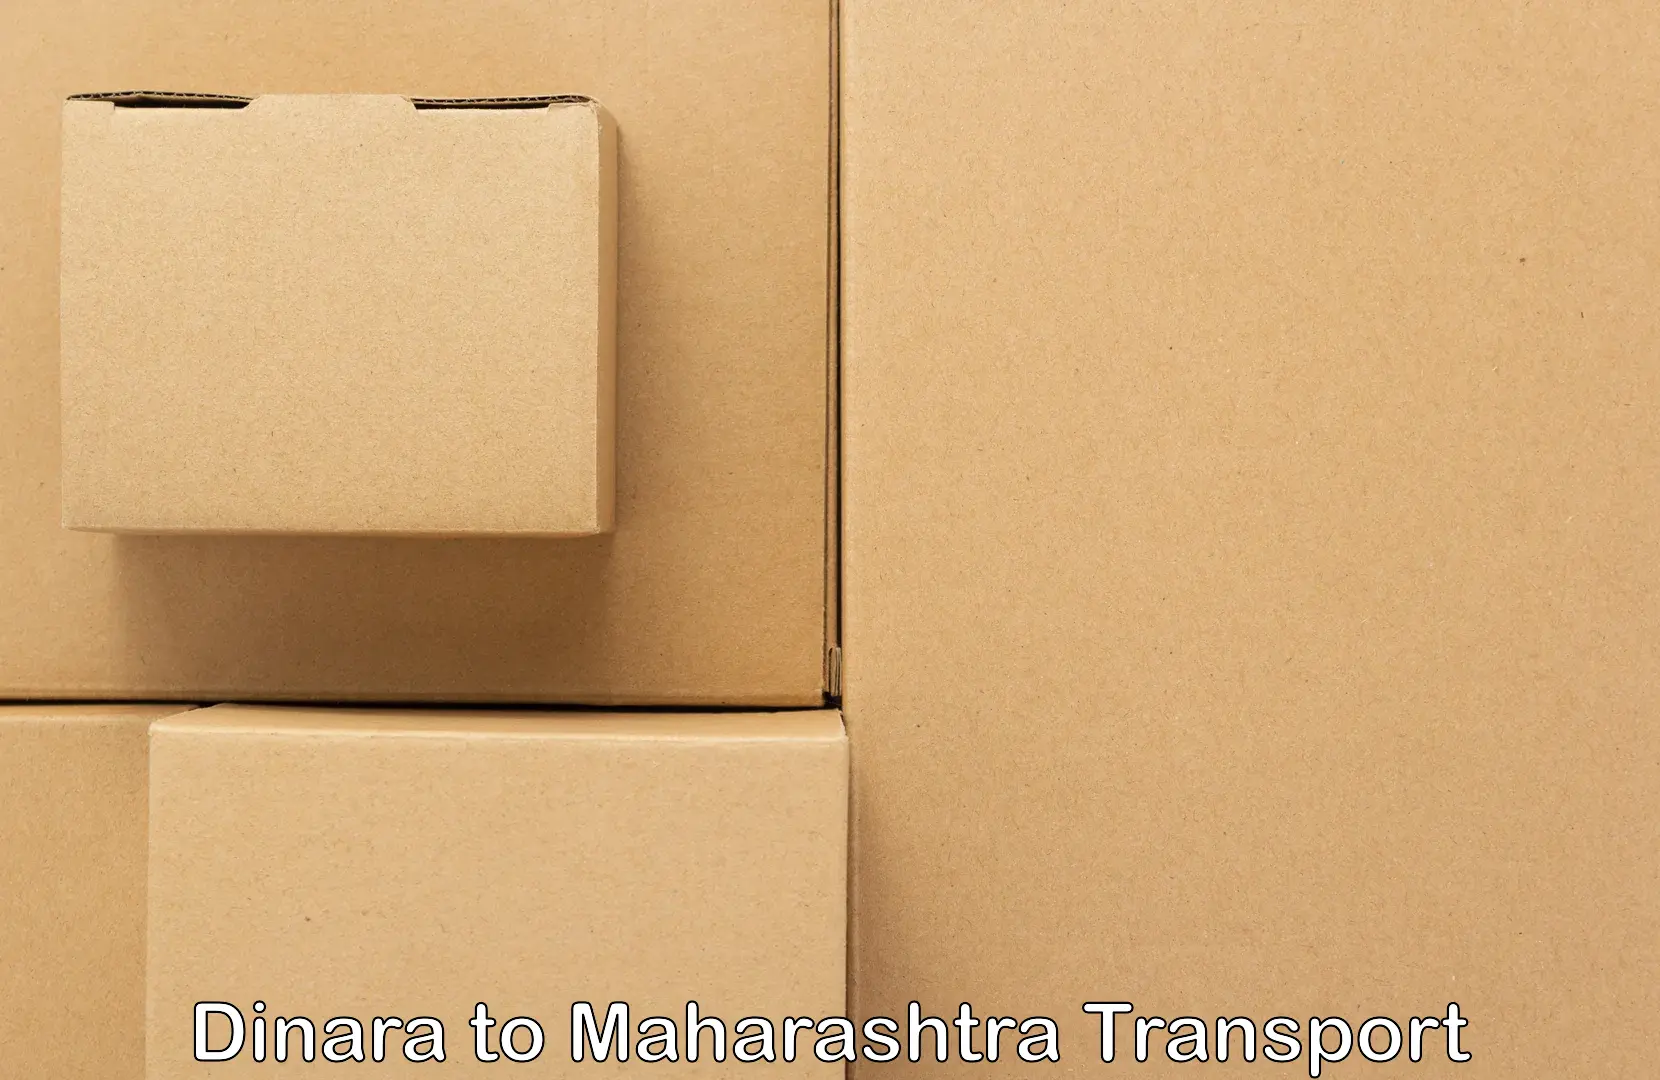 Shipping partner Dinara to Maharashtra